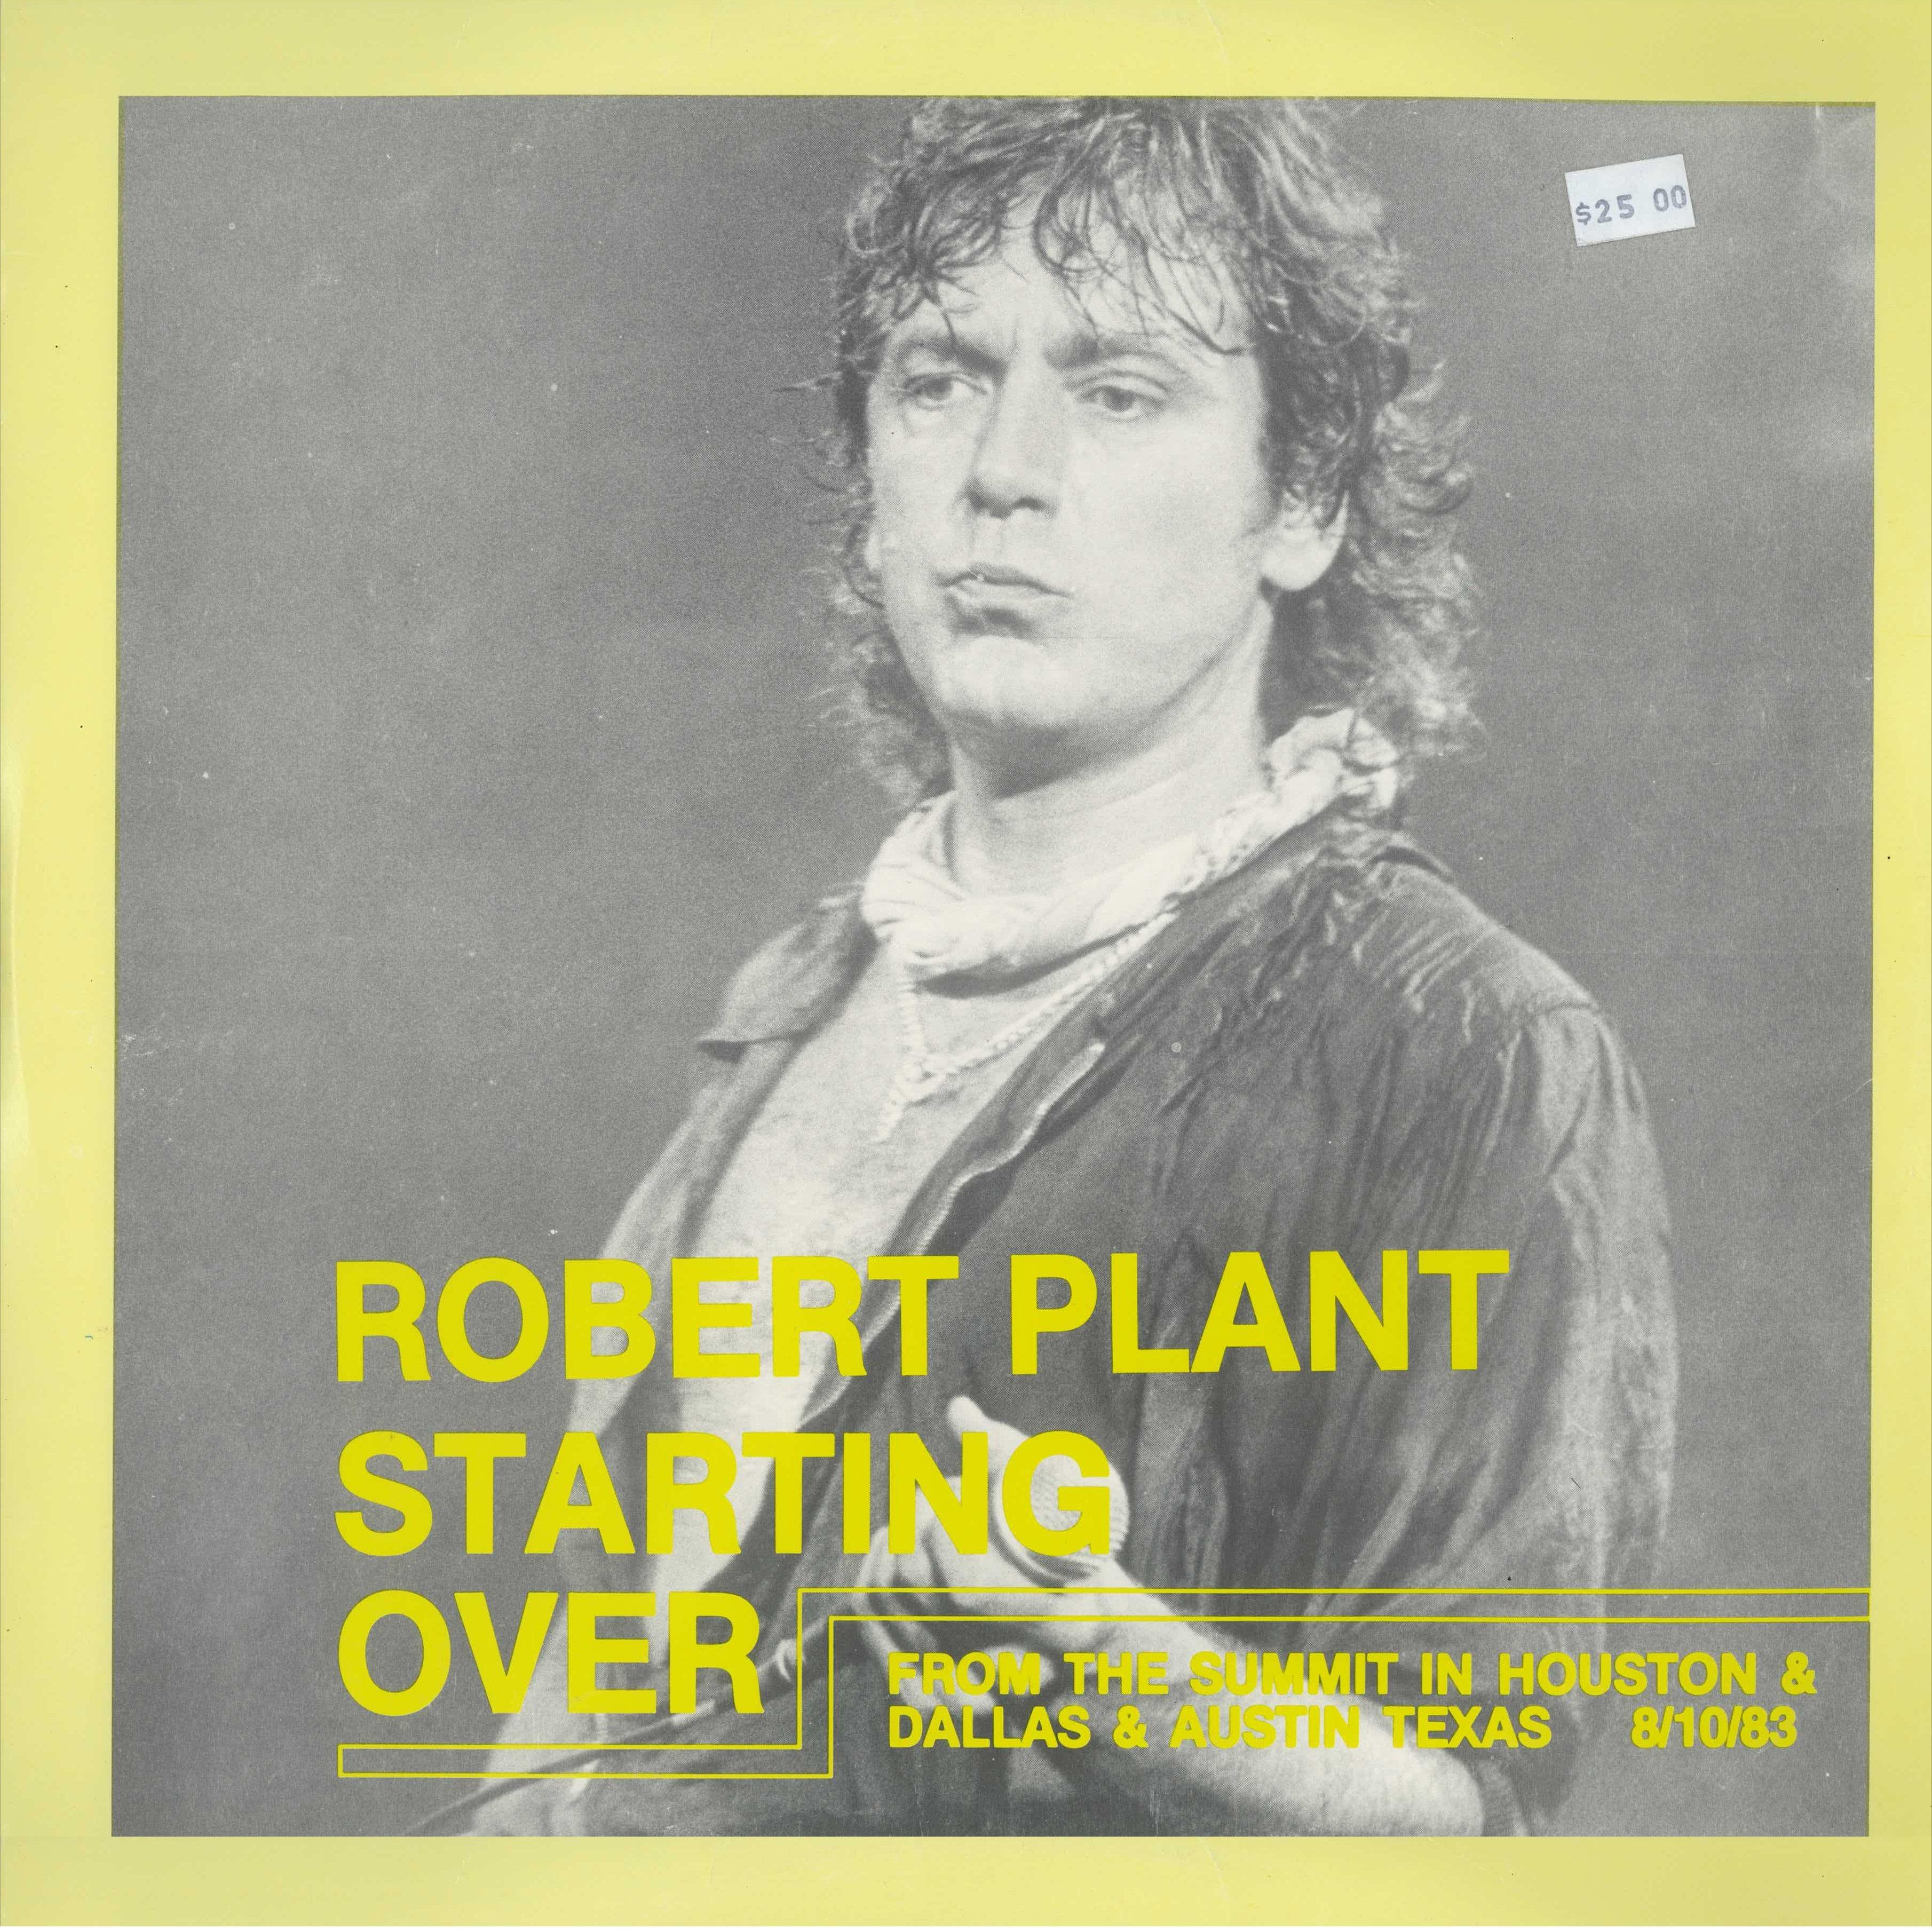 Big robert plant. Robert Plant 1982. Robert Plant 1983.